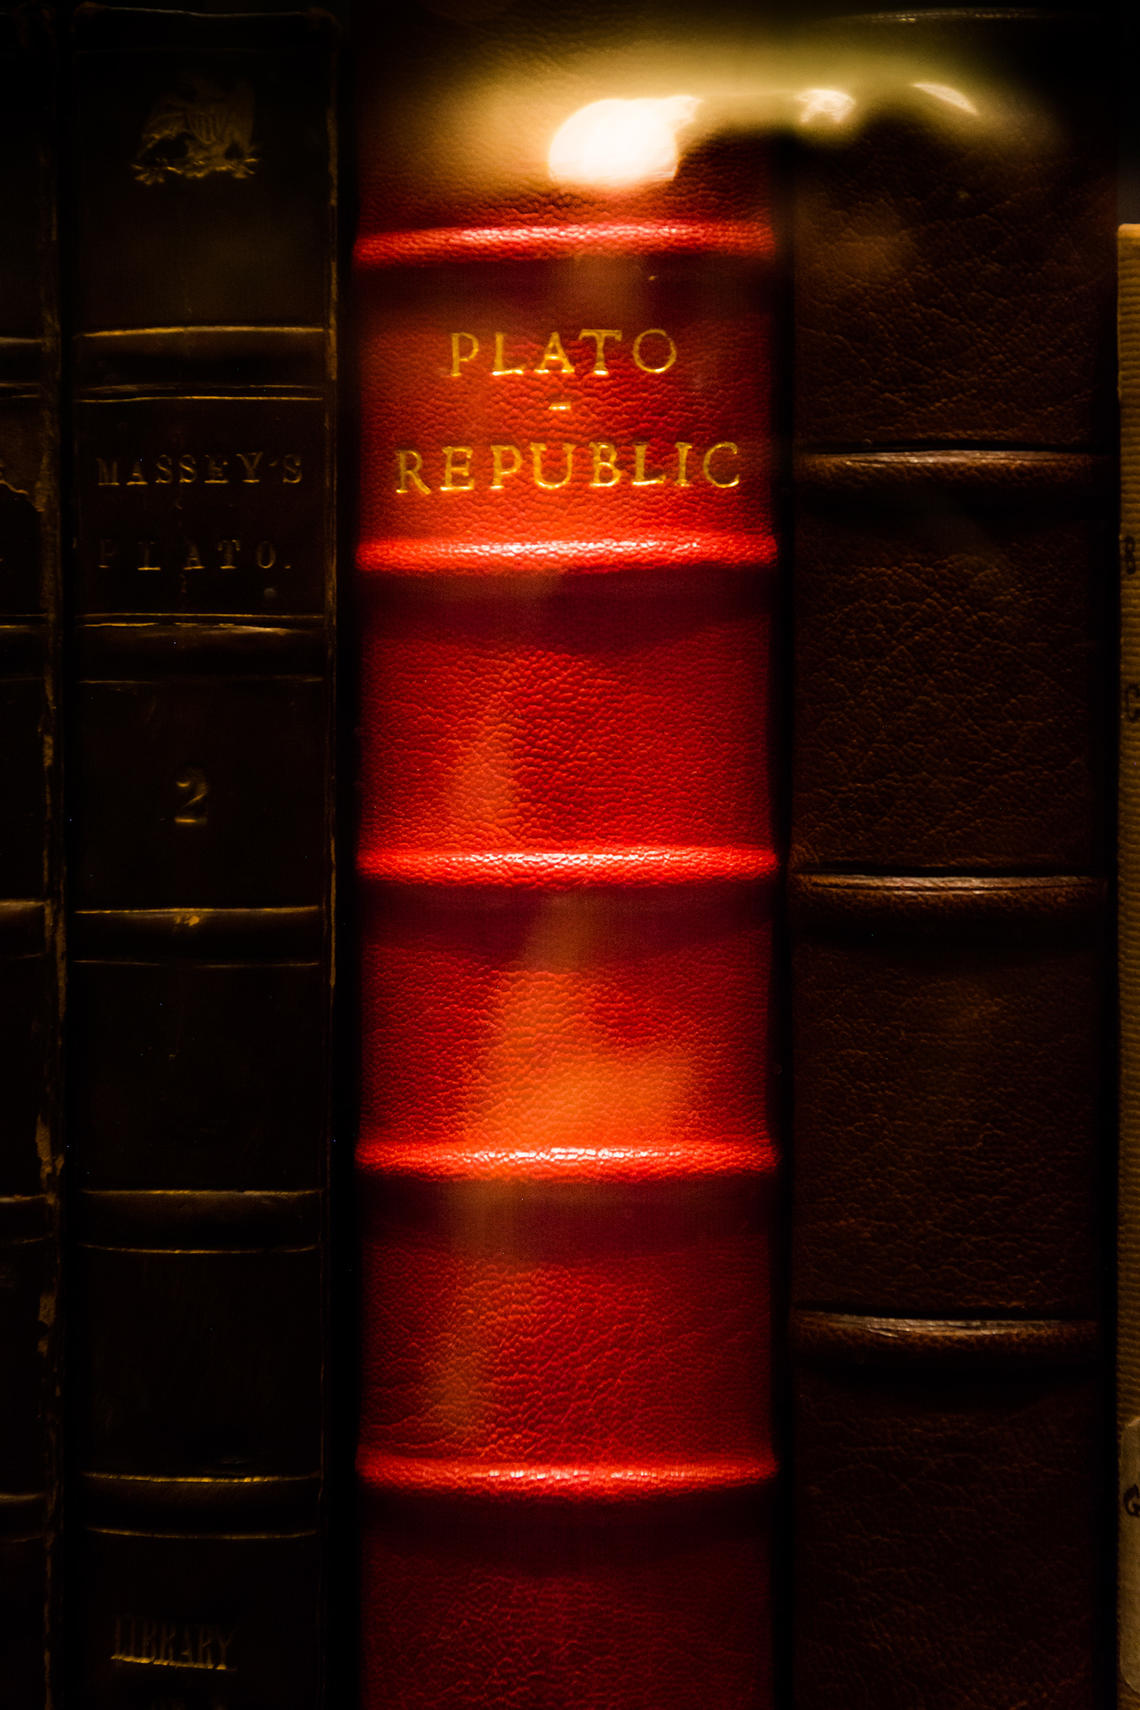 Plato's Republic on a shelf